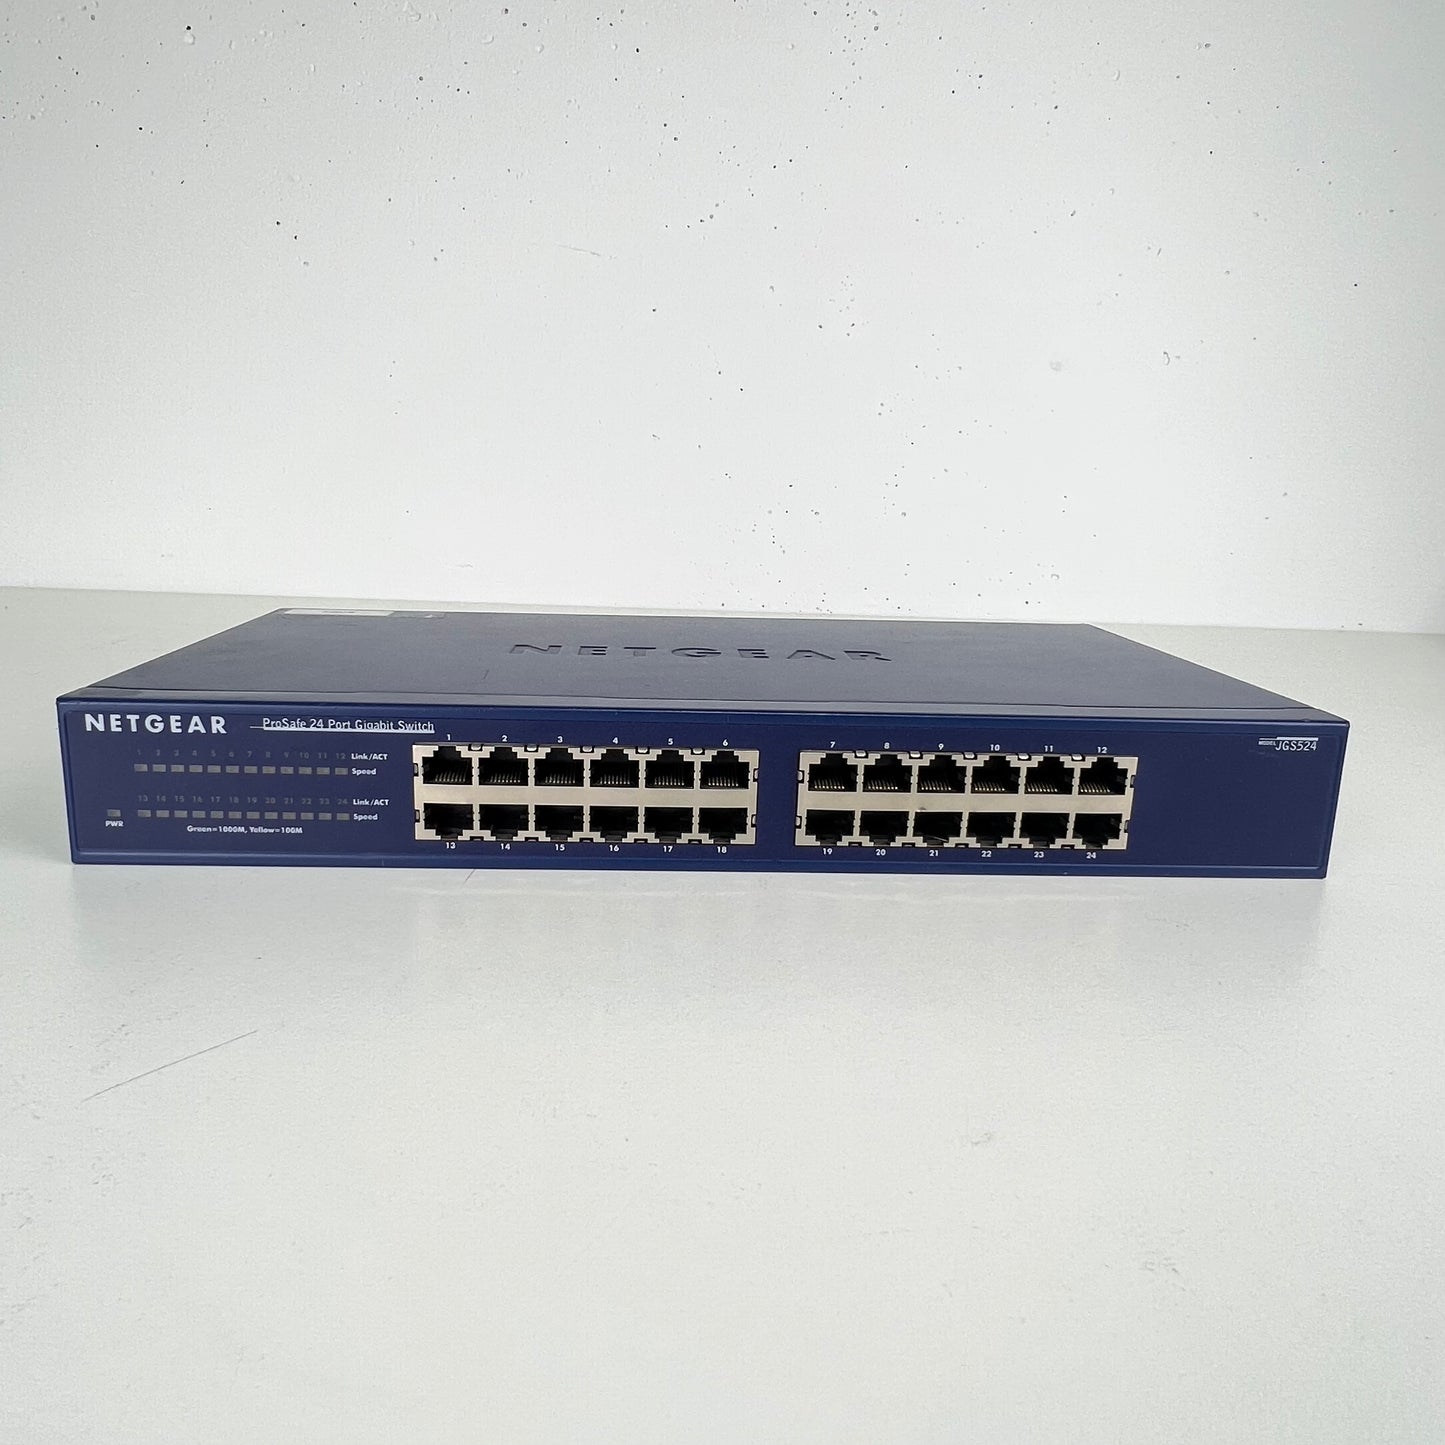 Netgear Prosafe 24 port Gigabit Switch JGS524 v2